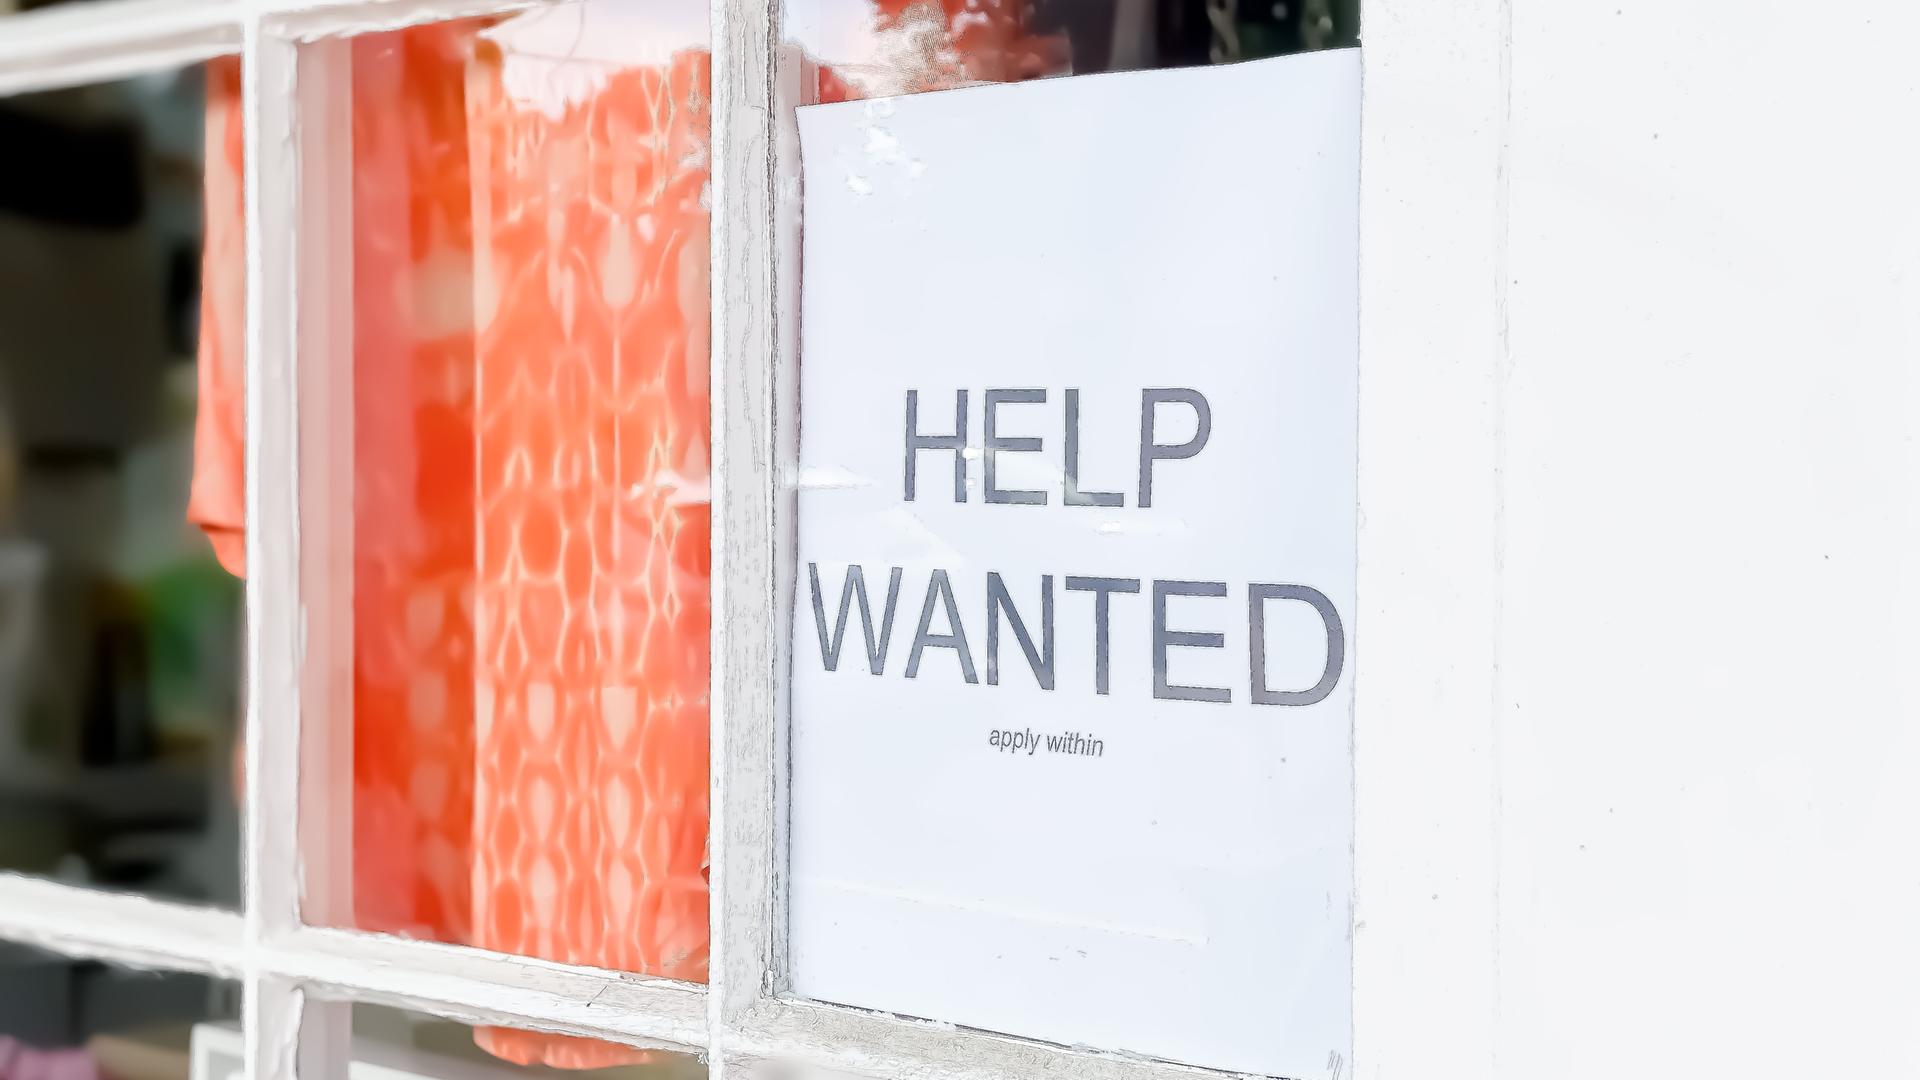 Ein Schild mit der Aufschrift "Help Wanted" hängt im Fenster eines Geschäfts.